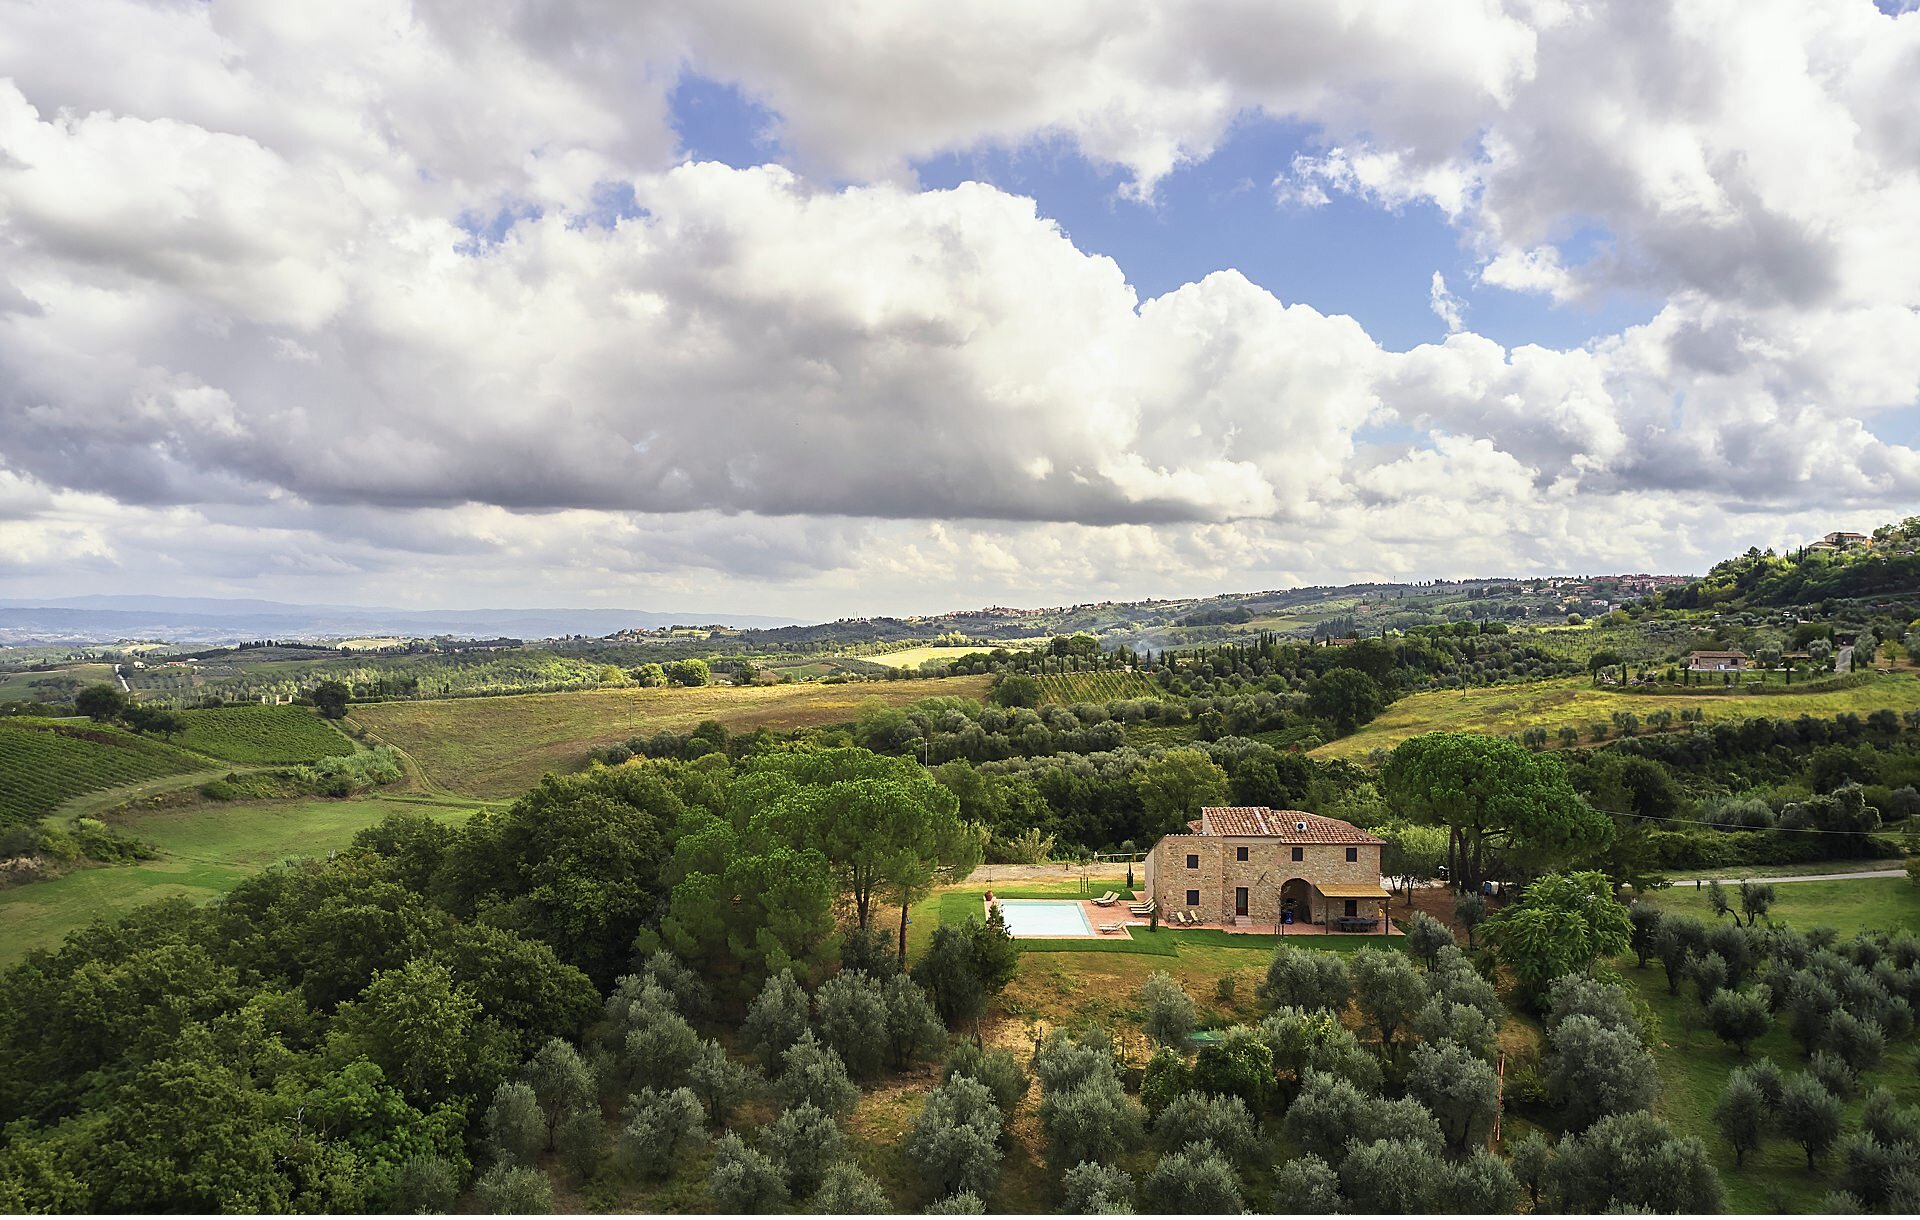  Bellissima villa appena restaurata in Toscana tra firenze, pisa e siena, a Montaione. La proprietà è stata ricavata da una vecchia zienda agricola di produzione vino. Sovrasta le colline toscane del chianti con piscina a sfioro. Numerose camere e am